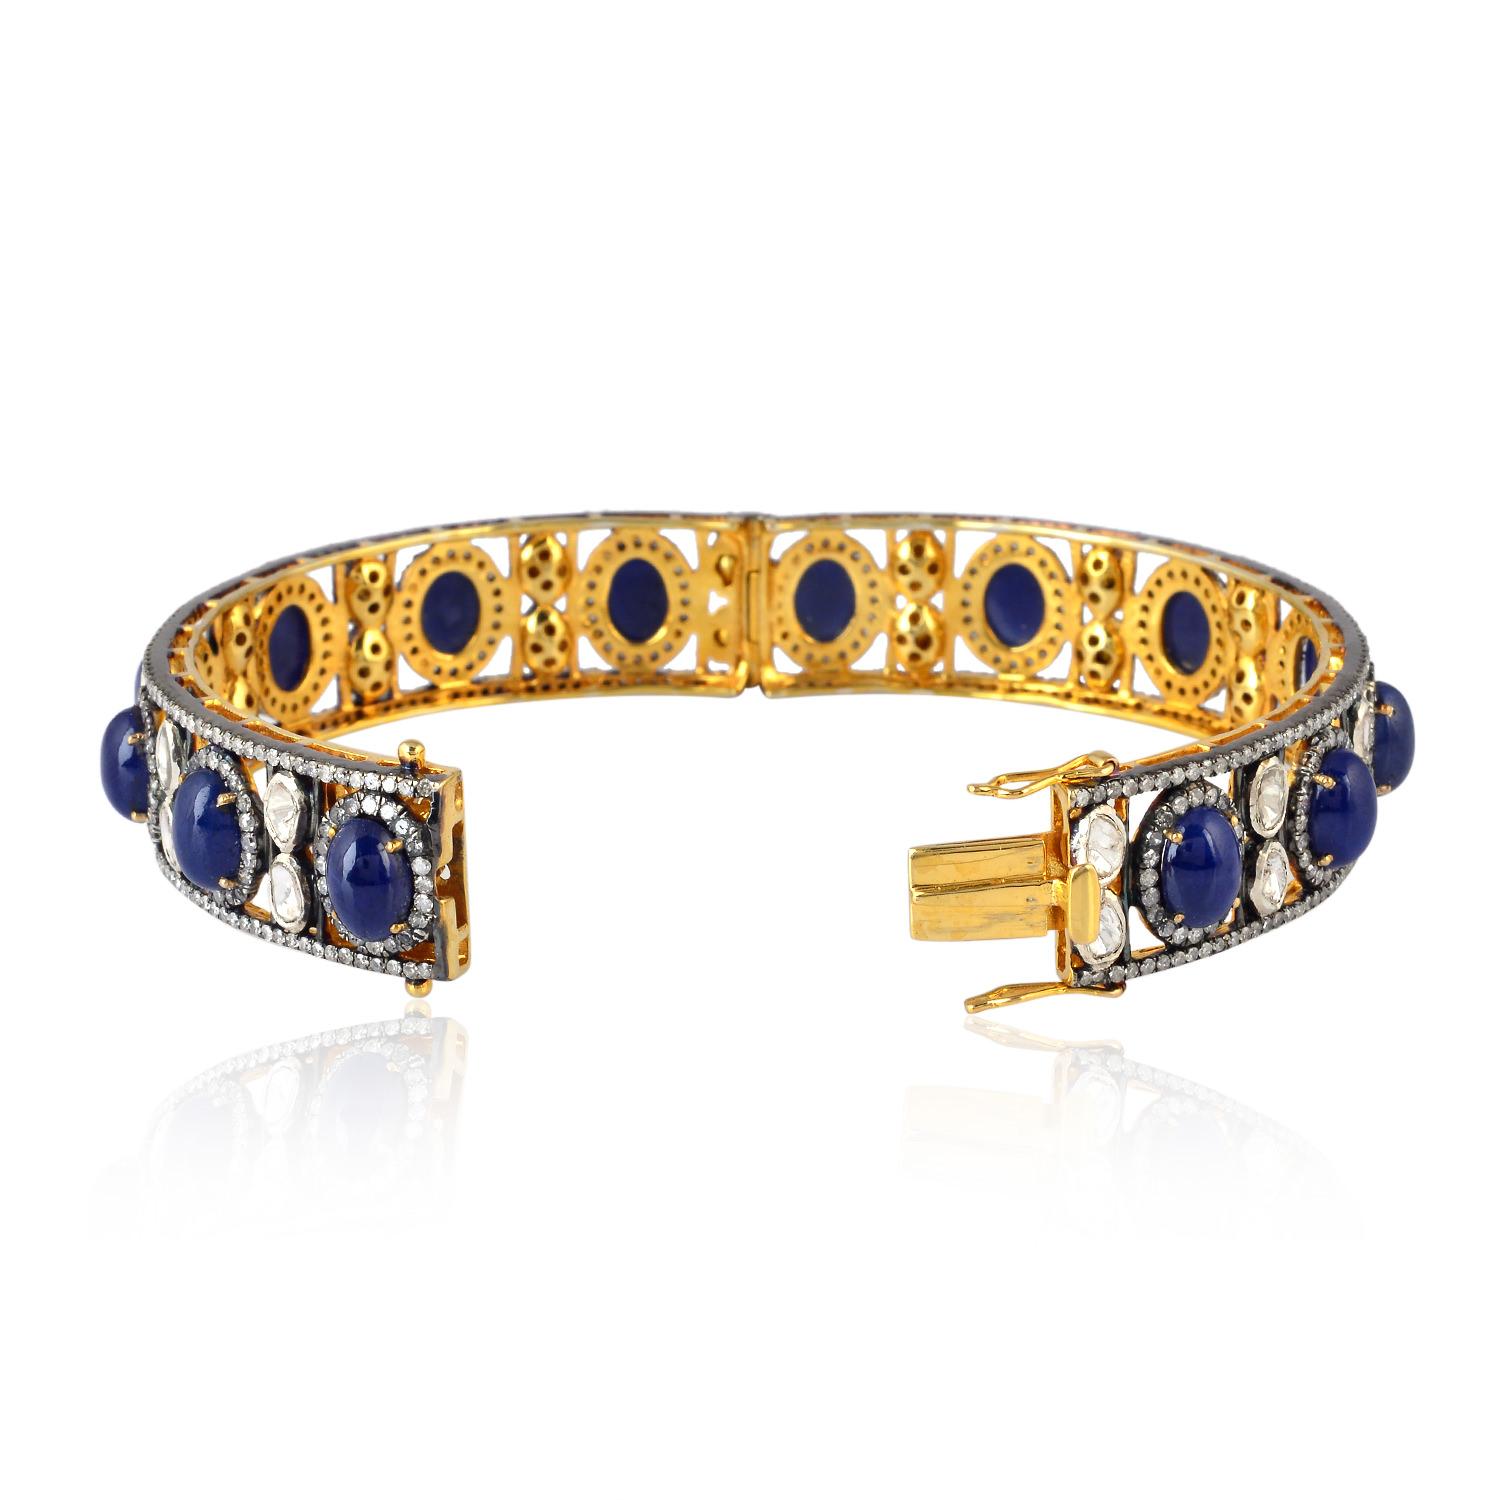 Un superbe bracelet fait à la main en or 18 carats et en argent sterling. Il est serti de 25,2 carats de saphir bleu et de 7,34 carats de diamants étincelants. Fermeture à crochet

SUIVRE  La vitrine de MEGHNA JEWELS pour découvrir la dernière